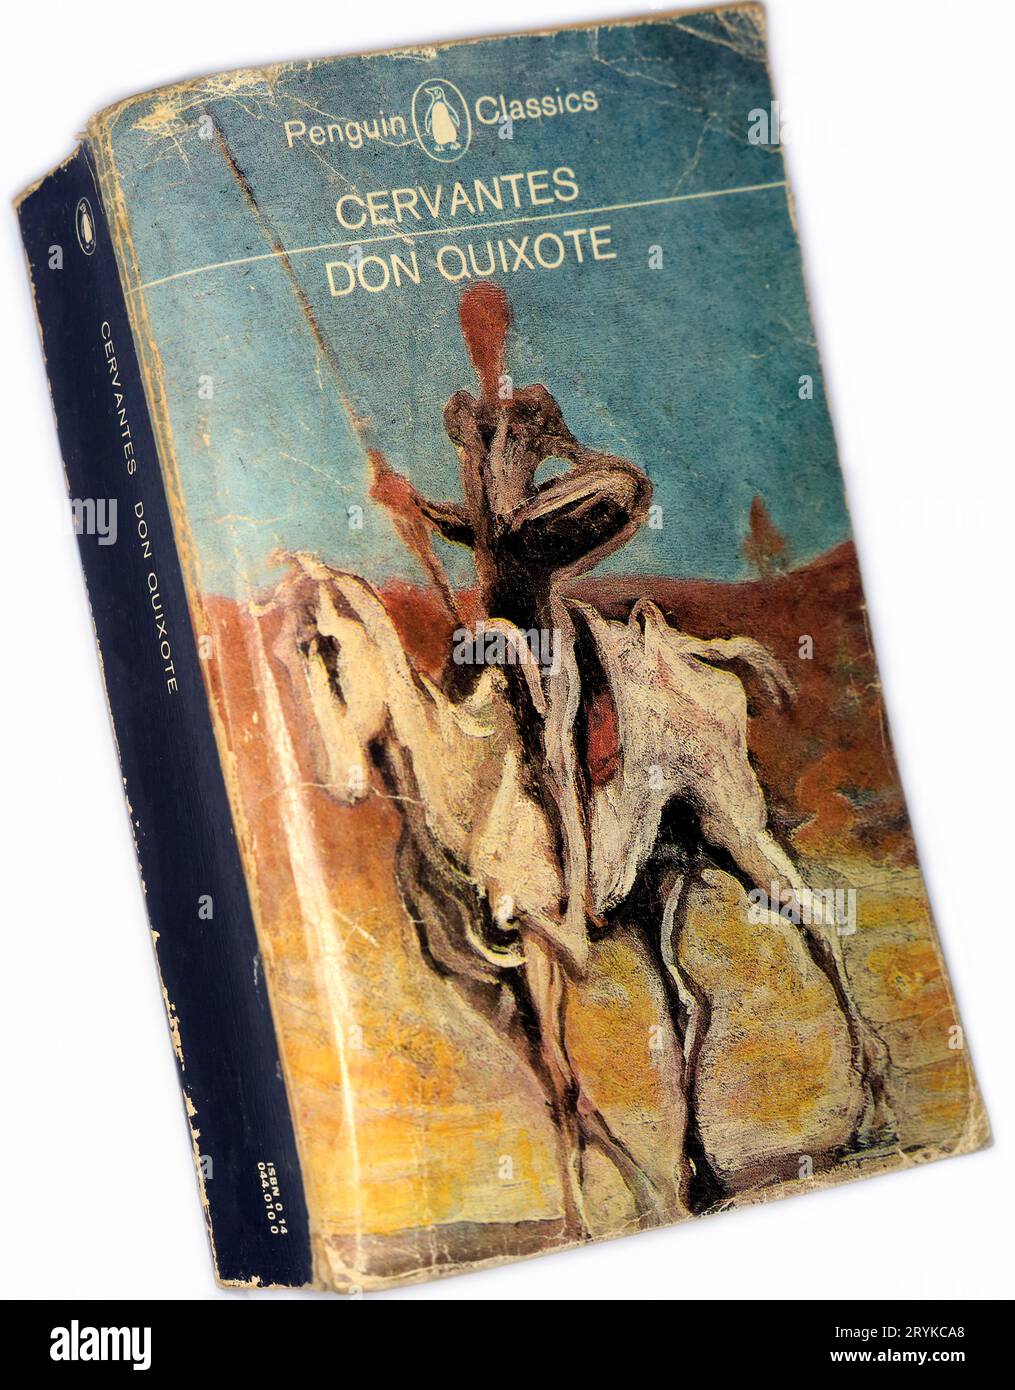 Don Quichotte - Cervantes. Couverture de livre, installation de studio sur fond blanc Banque D'Images